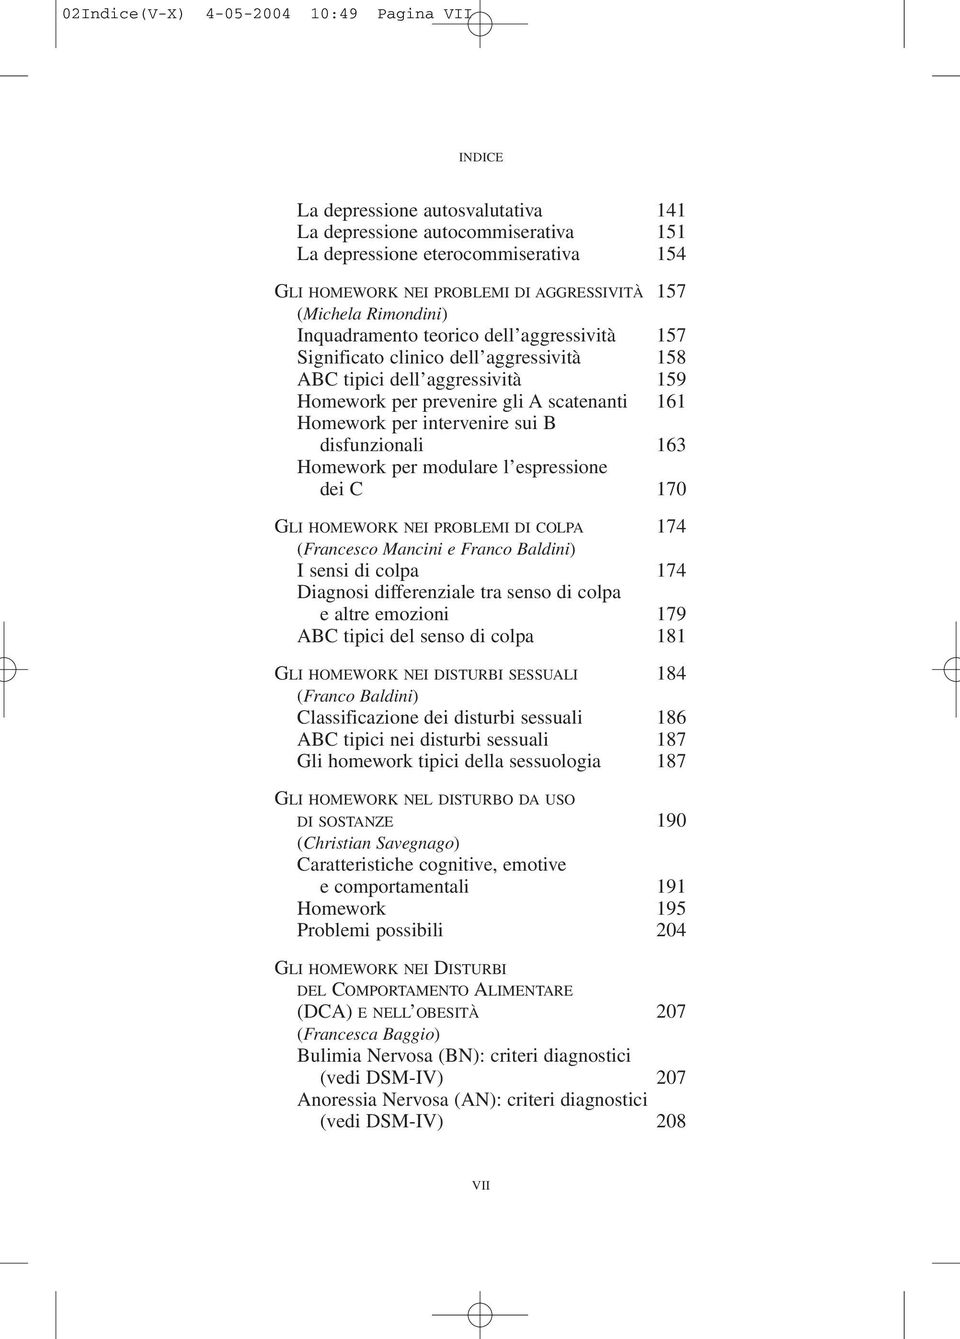 intervenire sui B disfunzionali 163 Homework per modulare l espressione dei C 170 GLI HOMEWORK NEI PROBLEMI DI COLPA 174 (Francesco Mancini e Franco Baldini) I sensi di colpa 174 Diagnosi